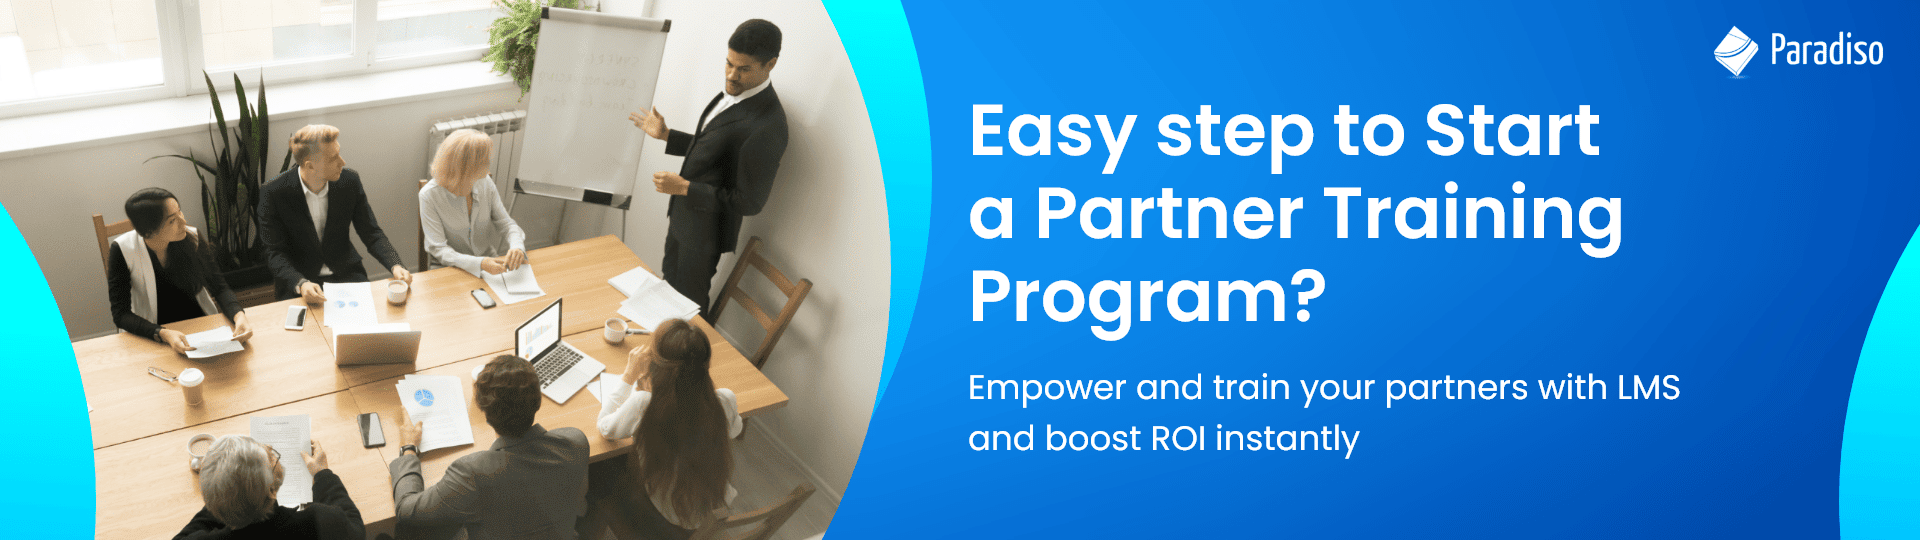 How to start partner training program